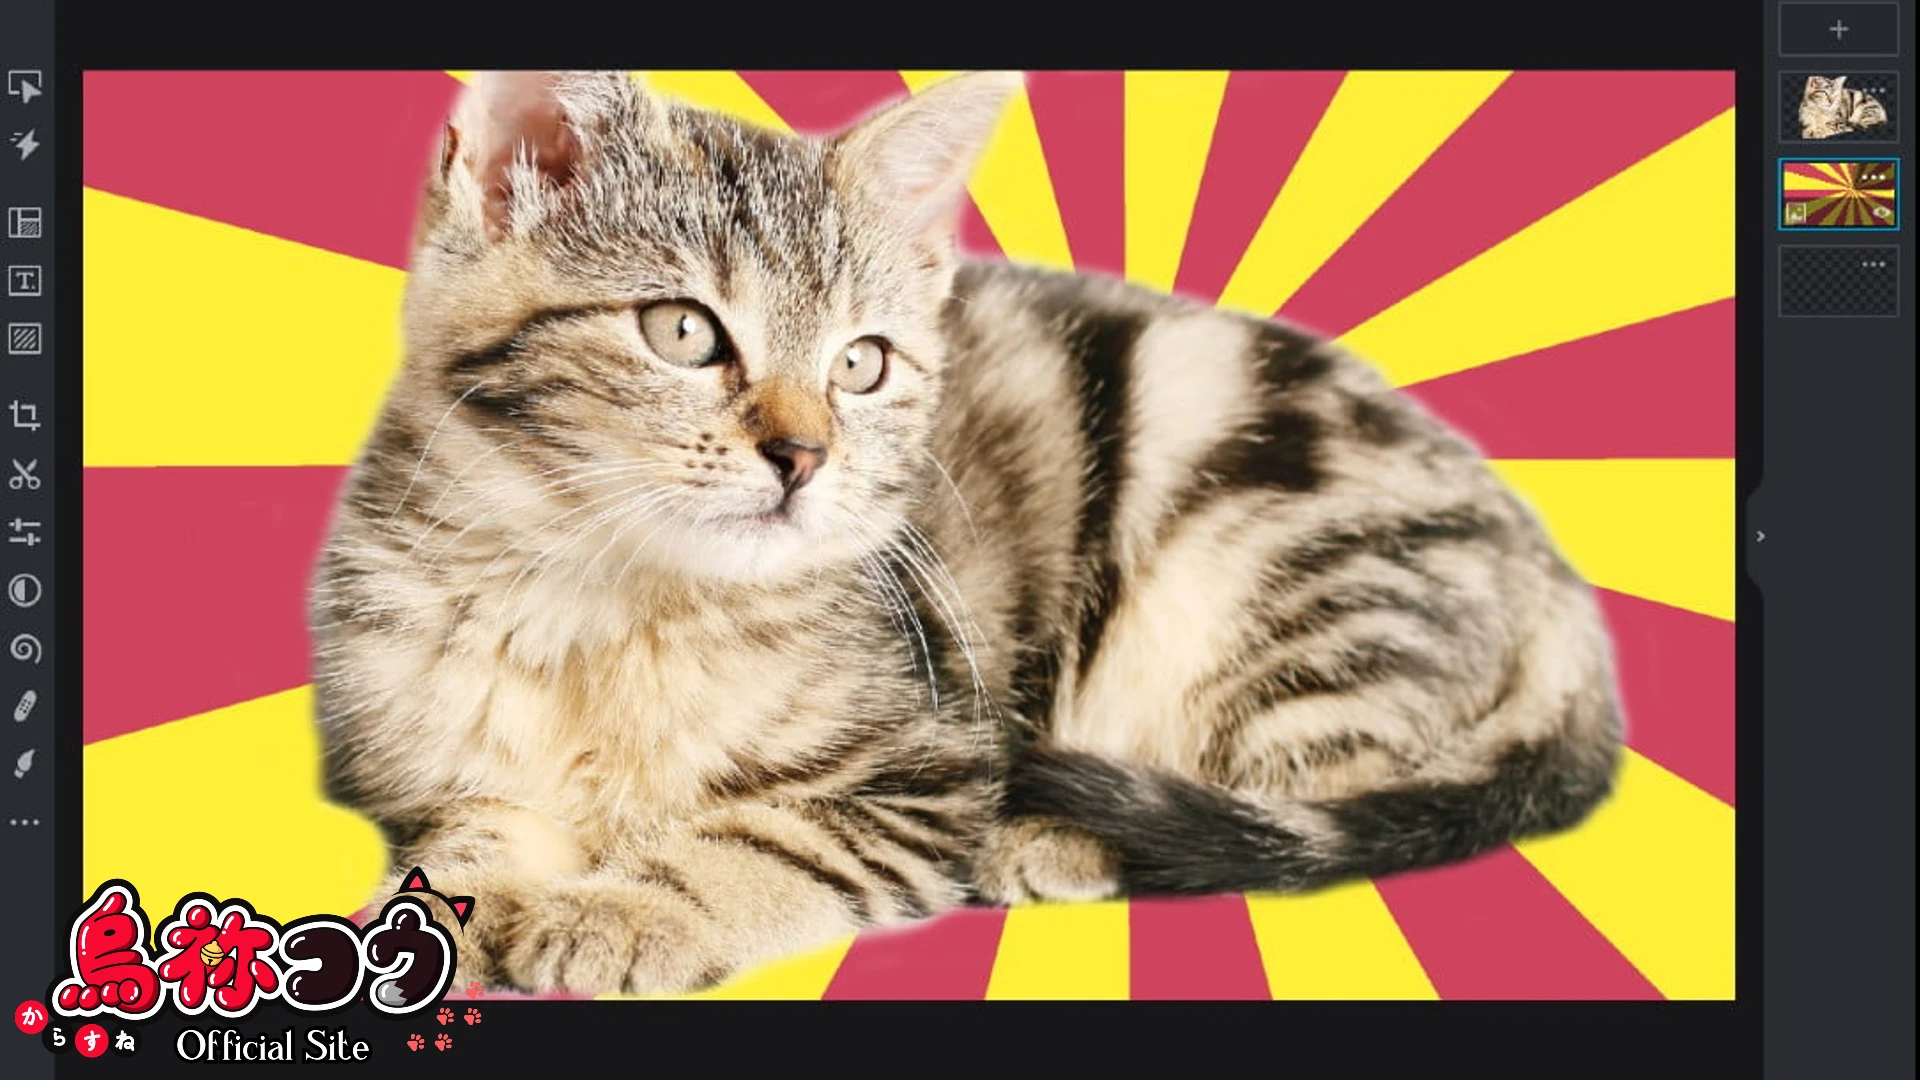 Pixlr で加工した猫の画像